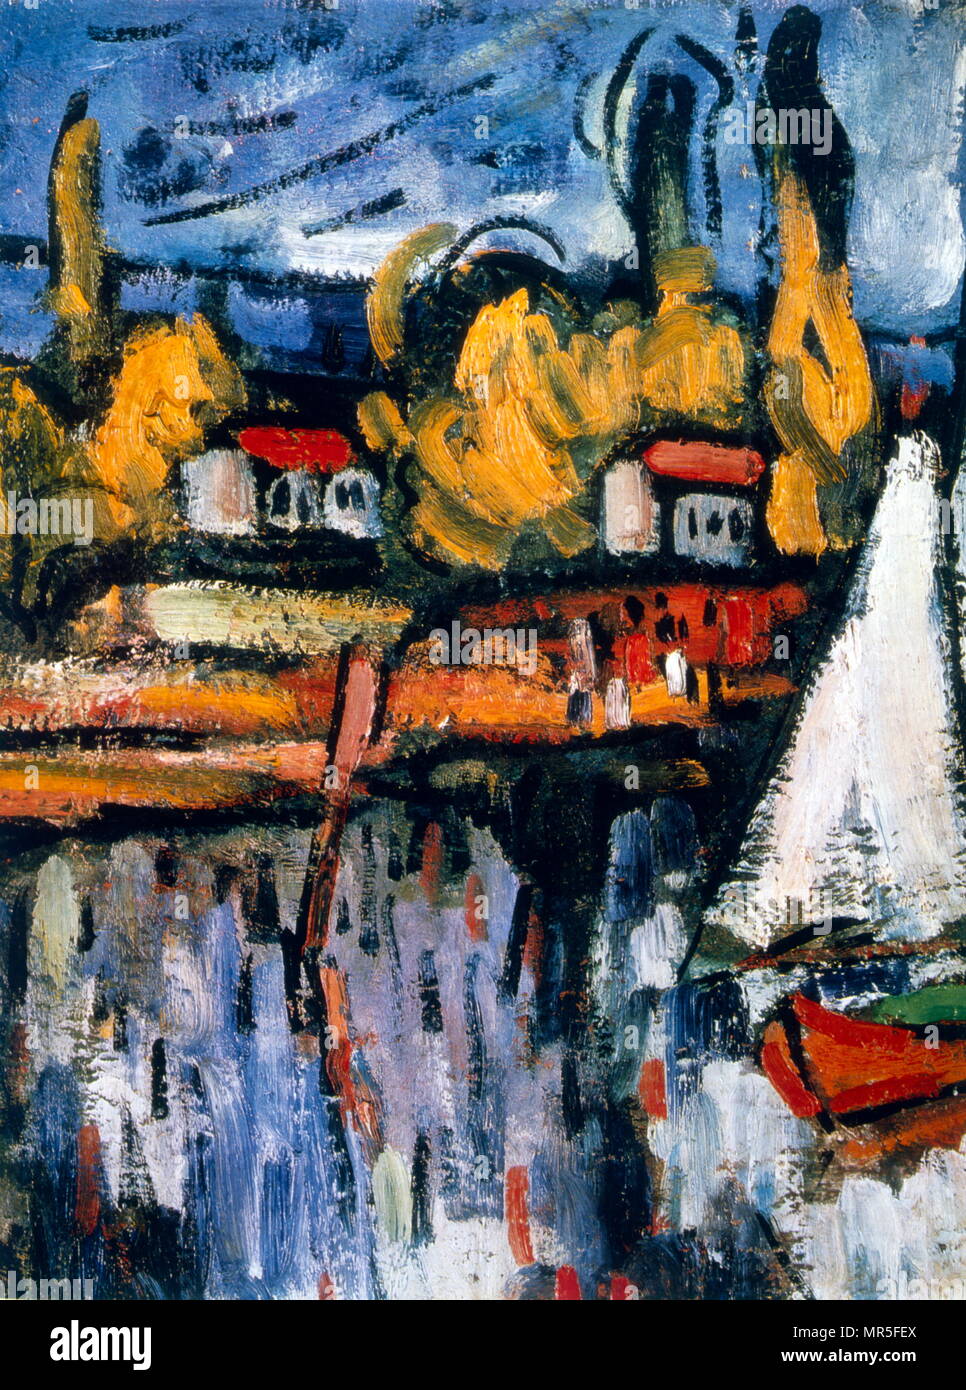 Vue sur la Seine, c.1906, huile sur toile, de Maurice de Vlaminck (1876 - 1958) ; le Musée de l'Ermitage. Vlaminck est un peintre français. Avec André Derain et Henri Matisse, il est considéré comme l'un des principaux représentants de l'expressionnisme et le fauvisme Banque D'Images